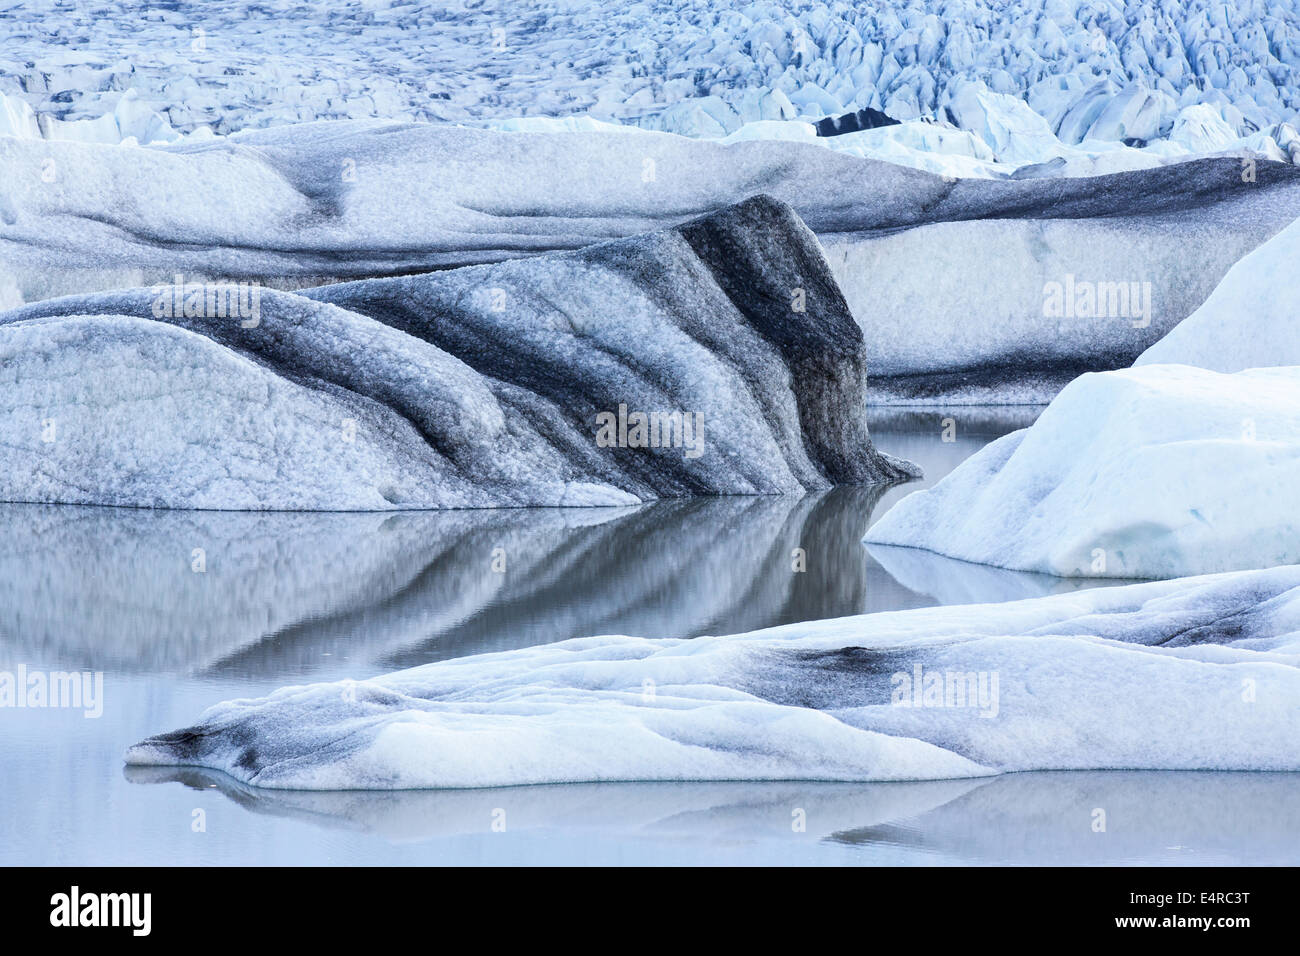 Iceland, scenic, Landschaft in Island, Eislandschaft am Gletschersee Joekulsarlon und am Gletscher Vatnajoekull Stock Photo